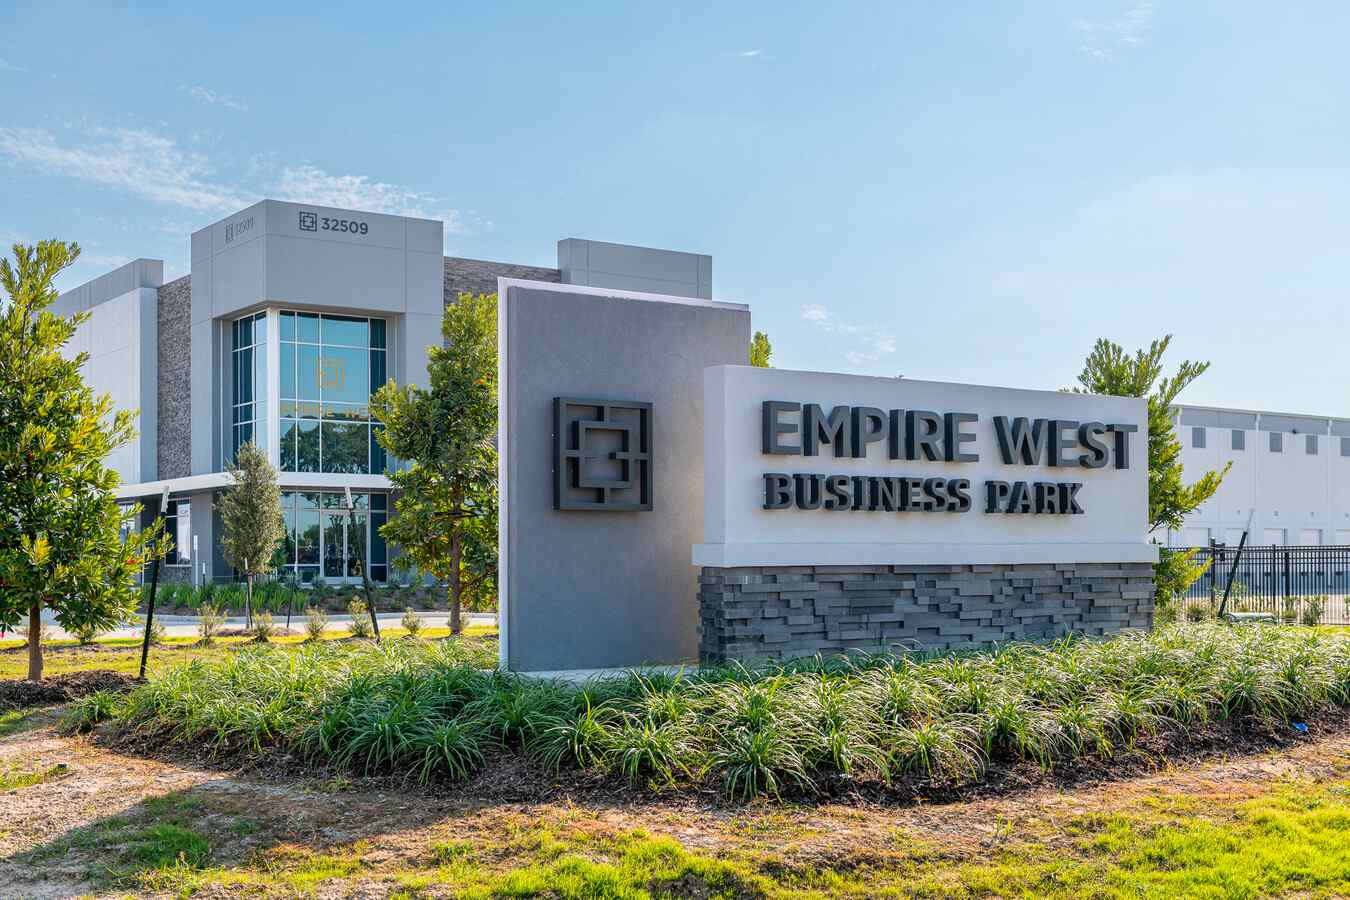 Empire West business park